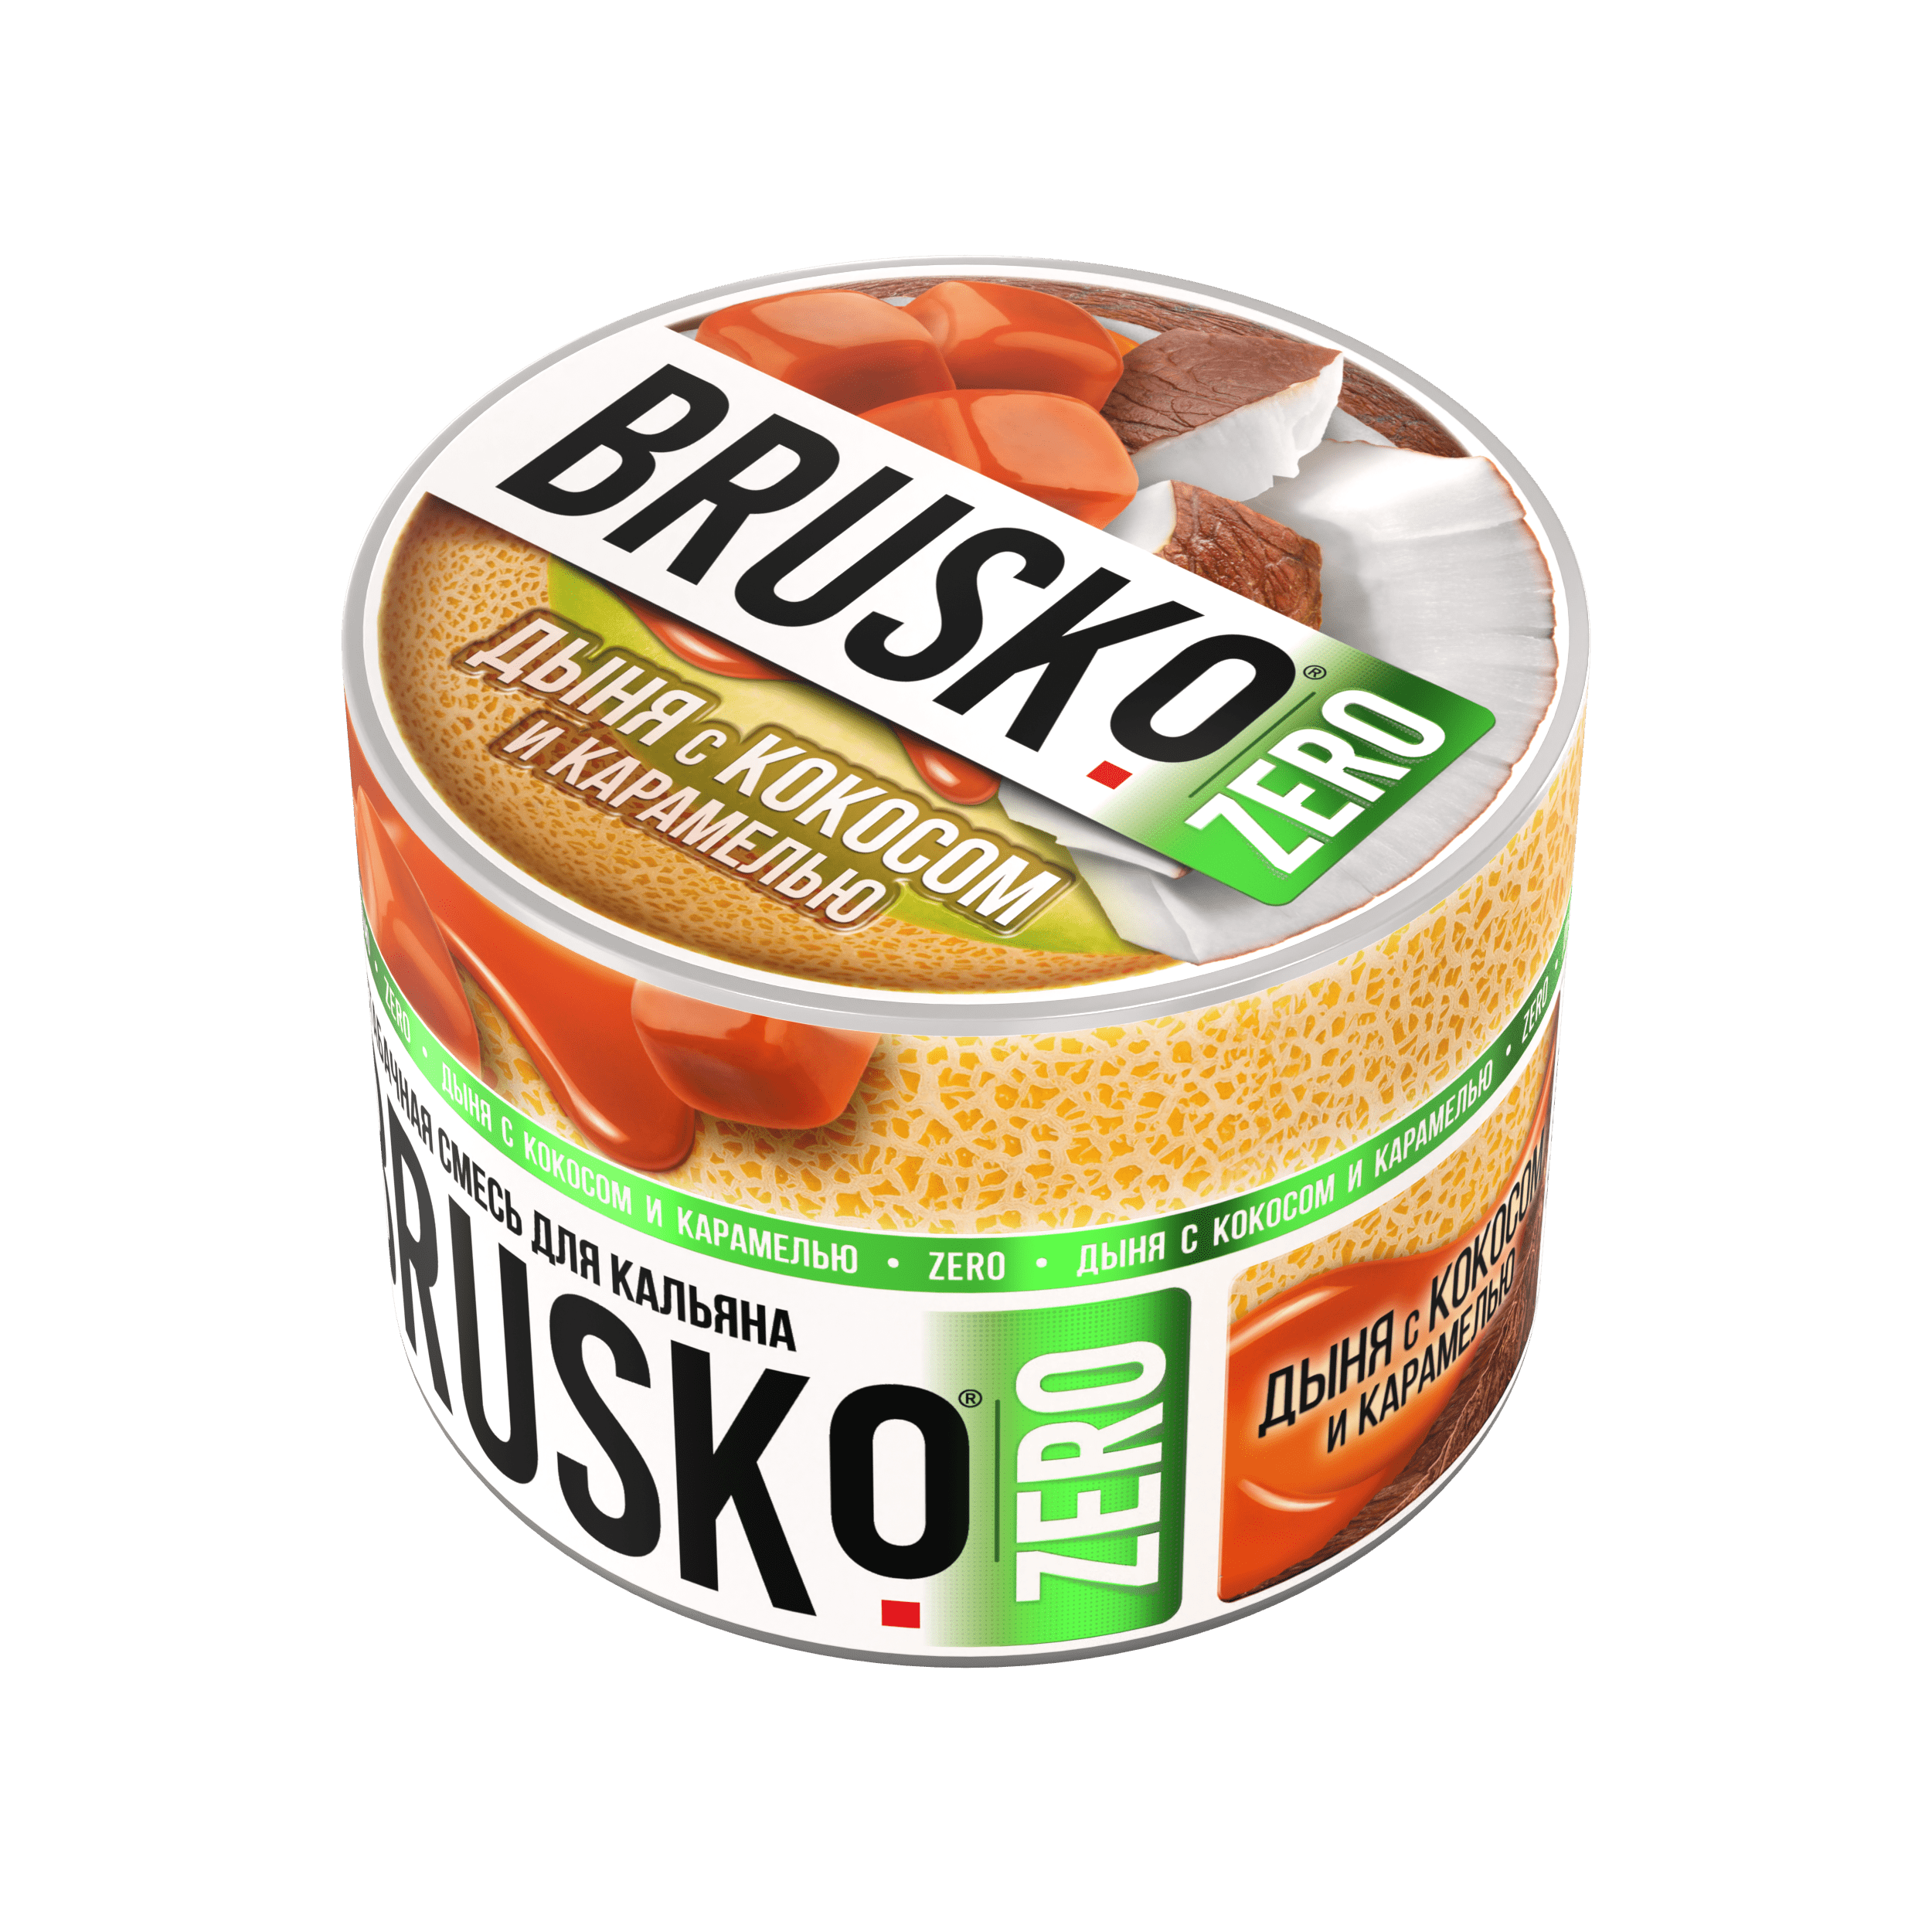 Бестабачная смесь для кальяна BRUSKO, 50 г, Дыня с кокосом и карамелью, Zero (М)